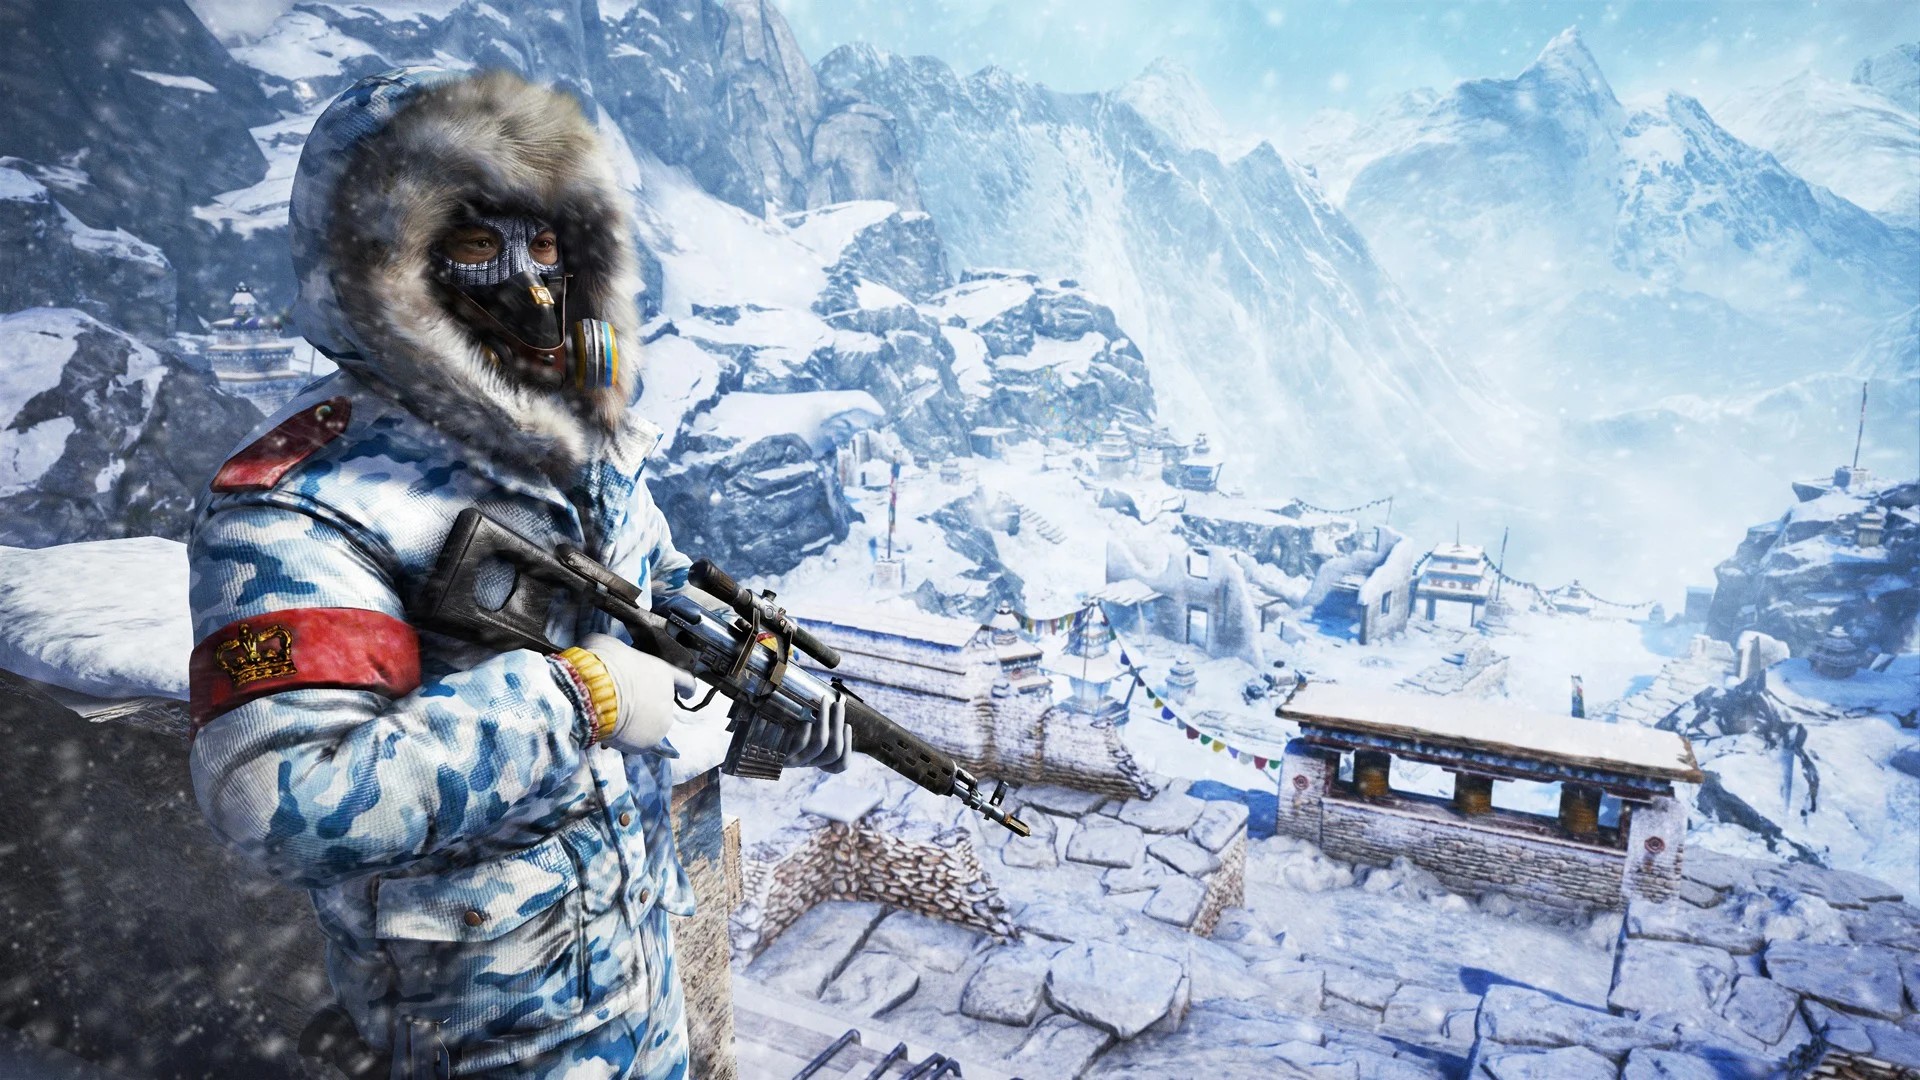 Far Cry 7 e jogo multiplayer da franquia devem chegar em 2025 